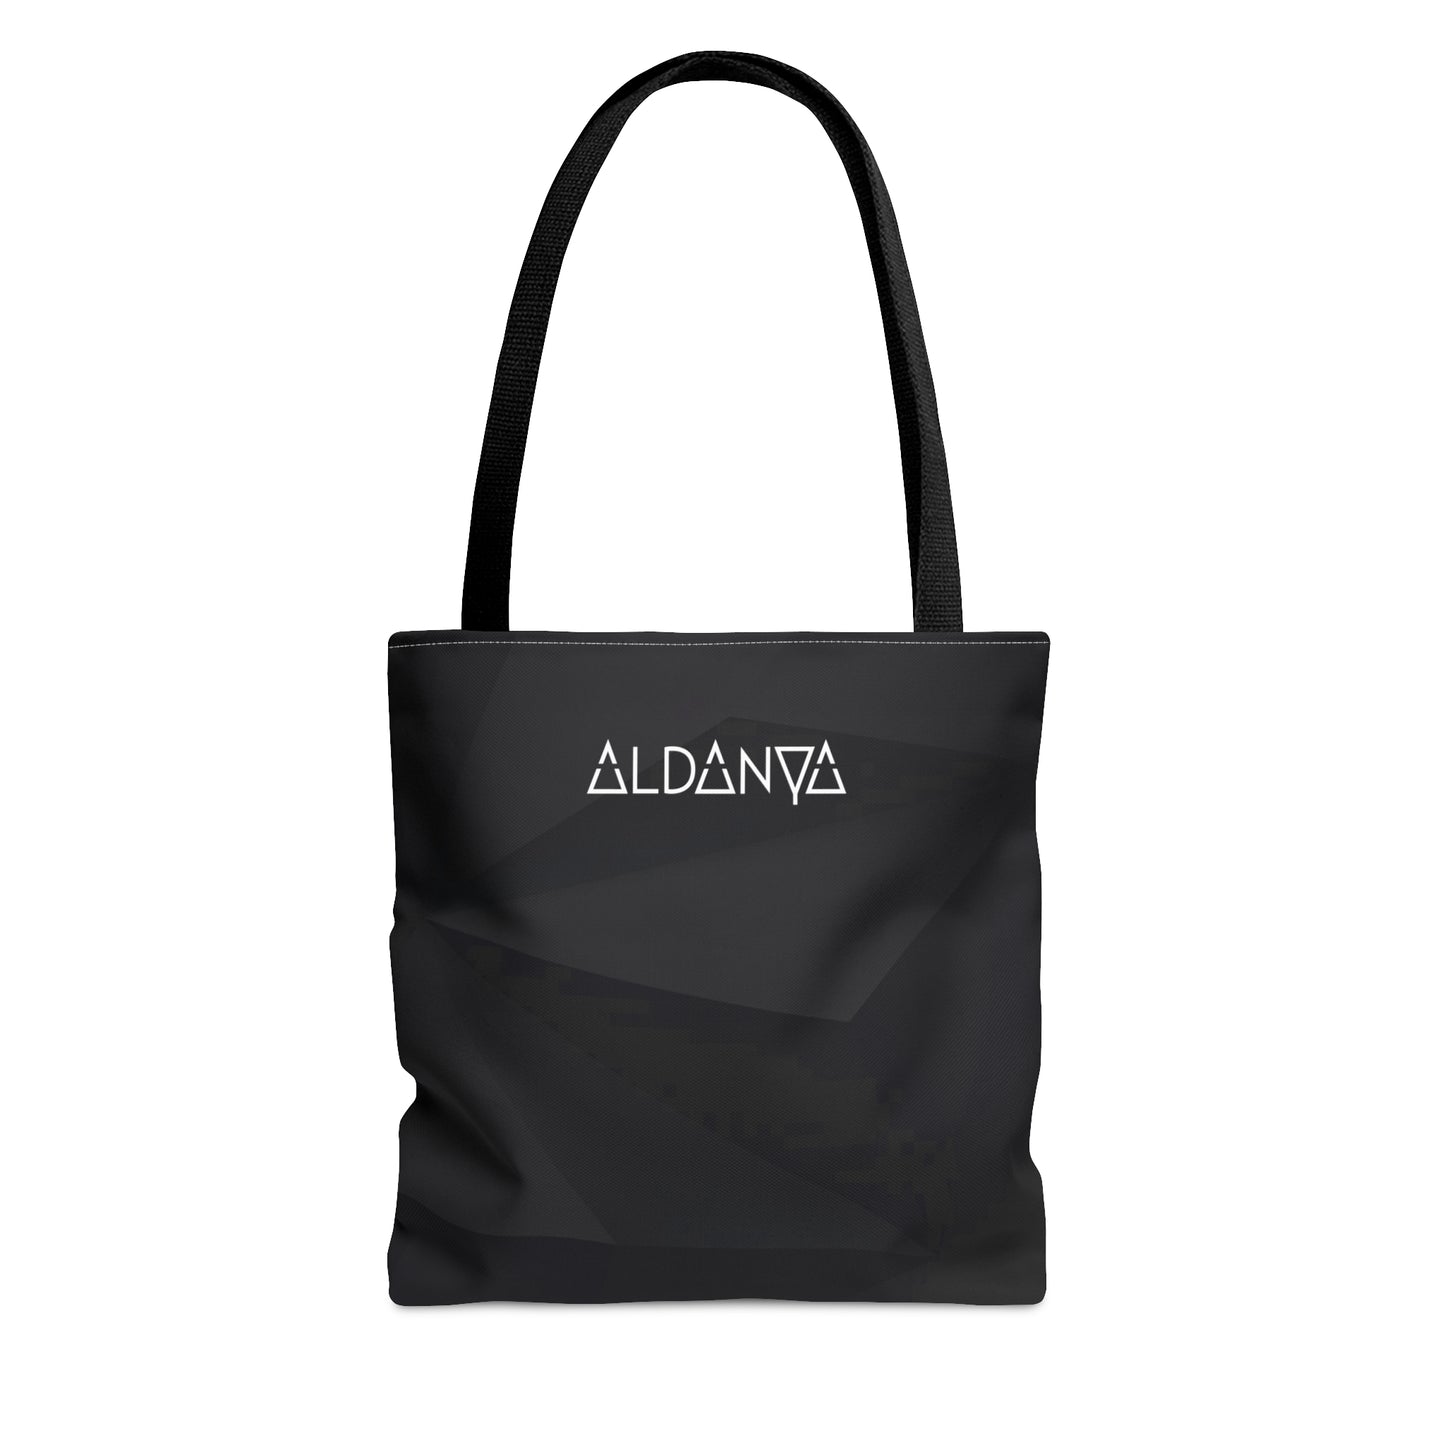 ALDANYA - Logo - AOP Tote Bag